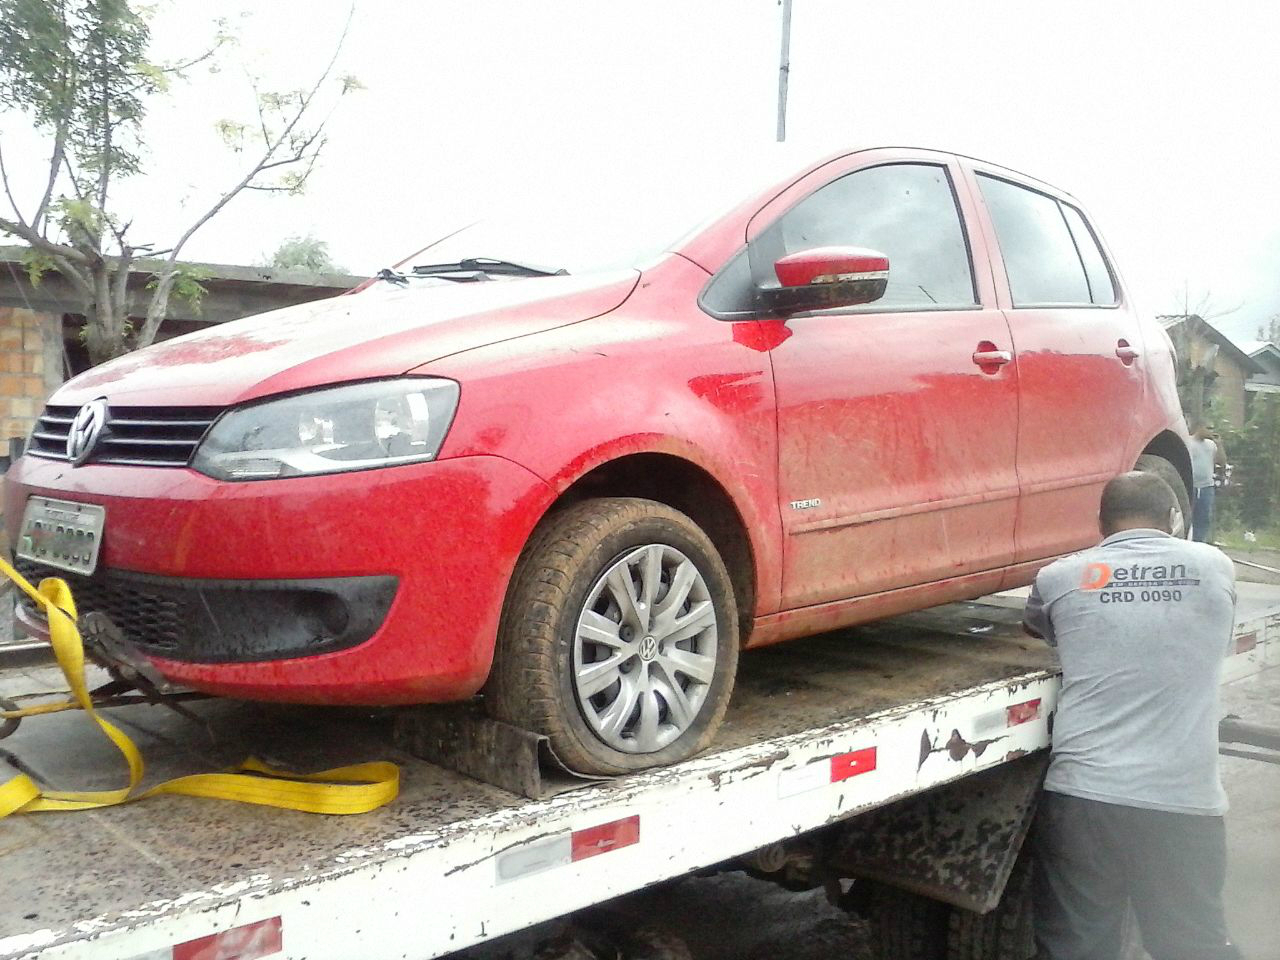 Carro recuperado pela Brigada Militar estava em ocorrência de roubo | Foto: 24º BPM / Divulgação / OA